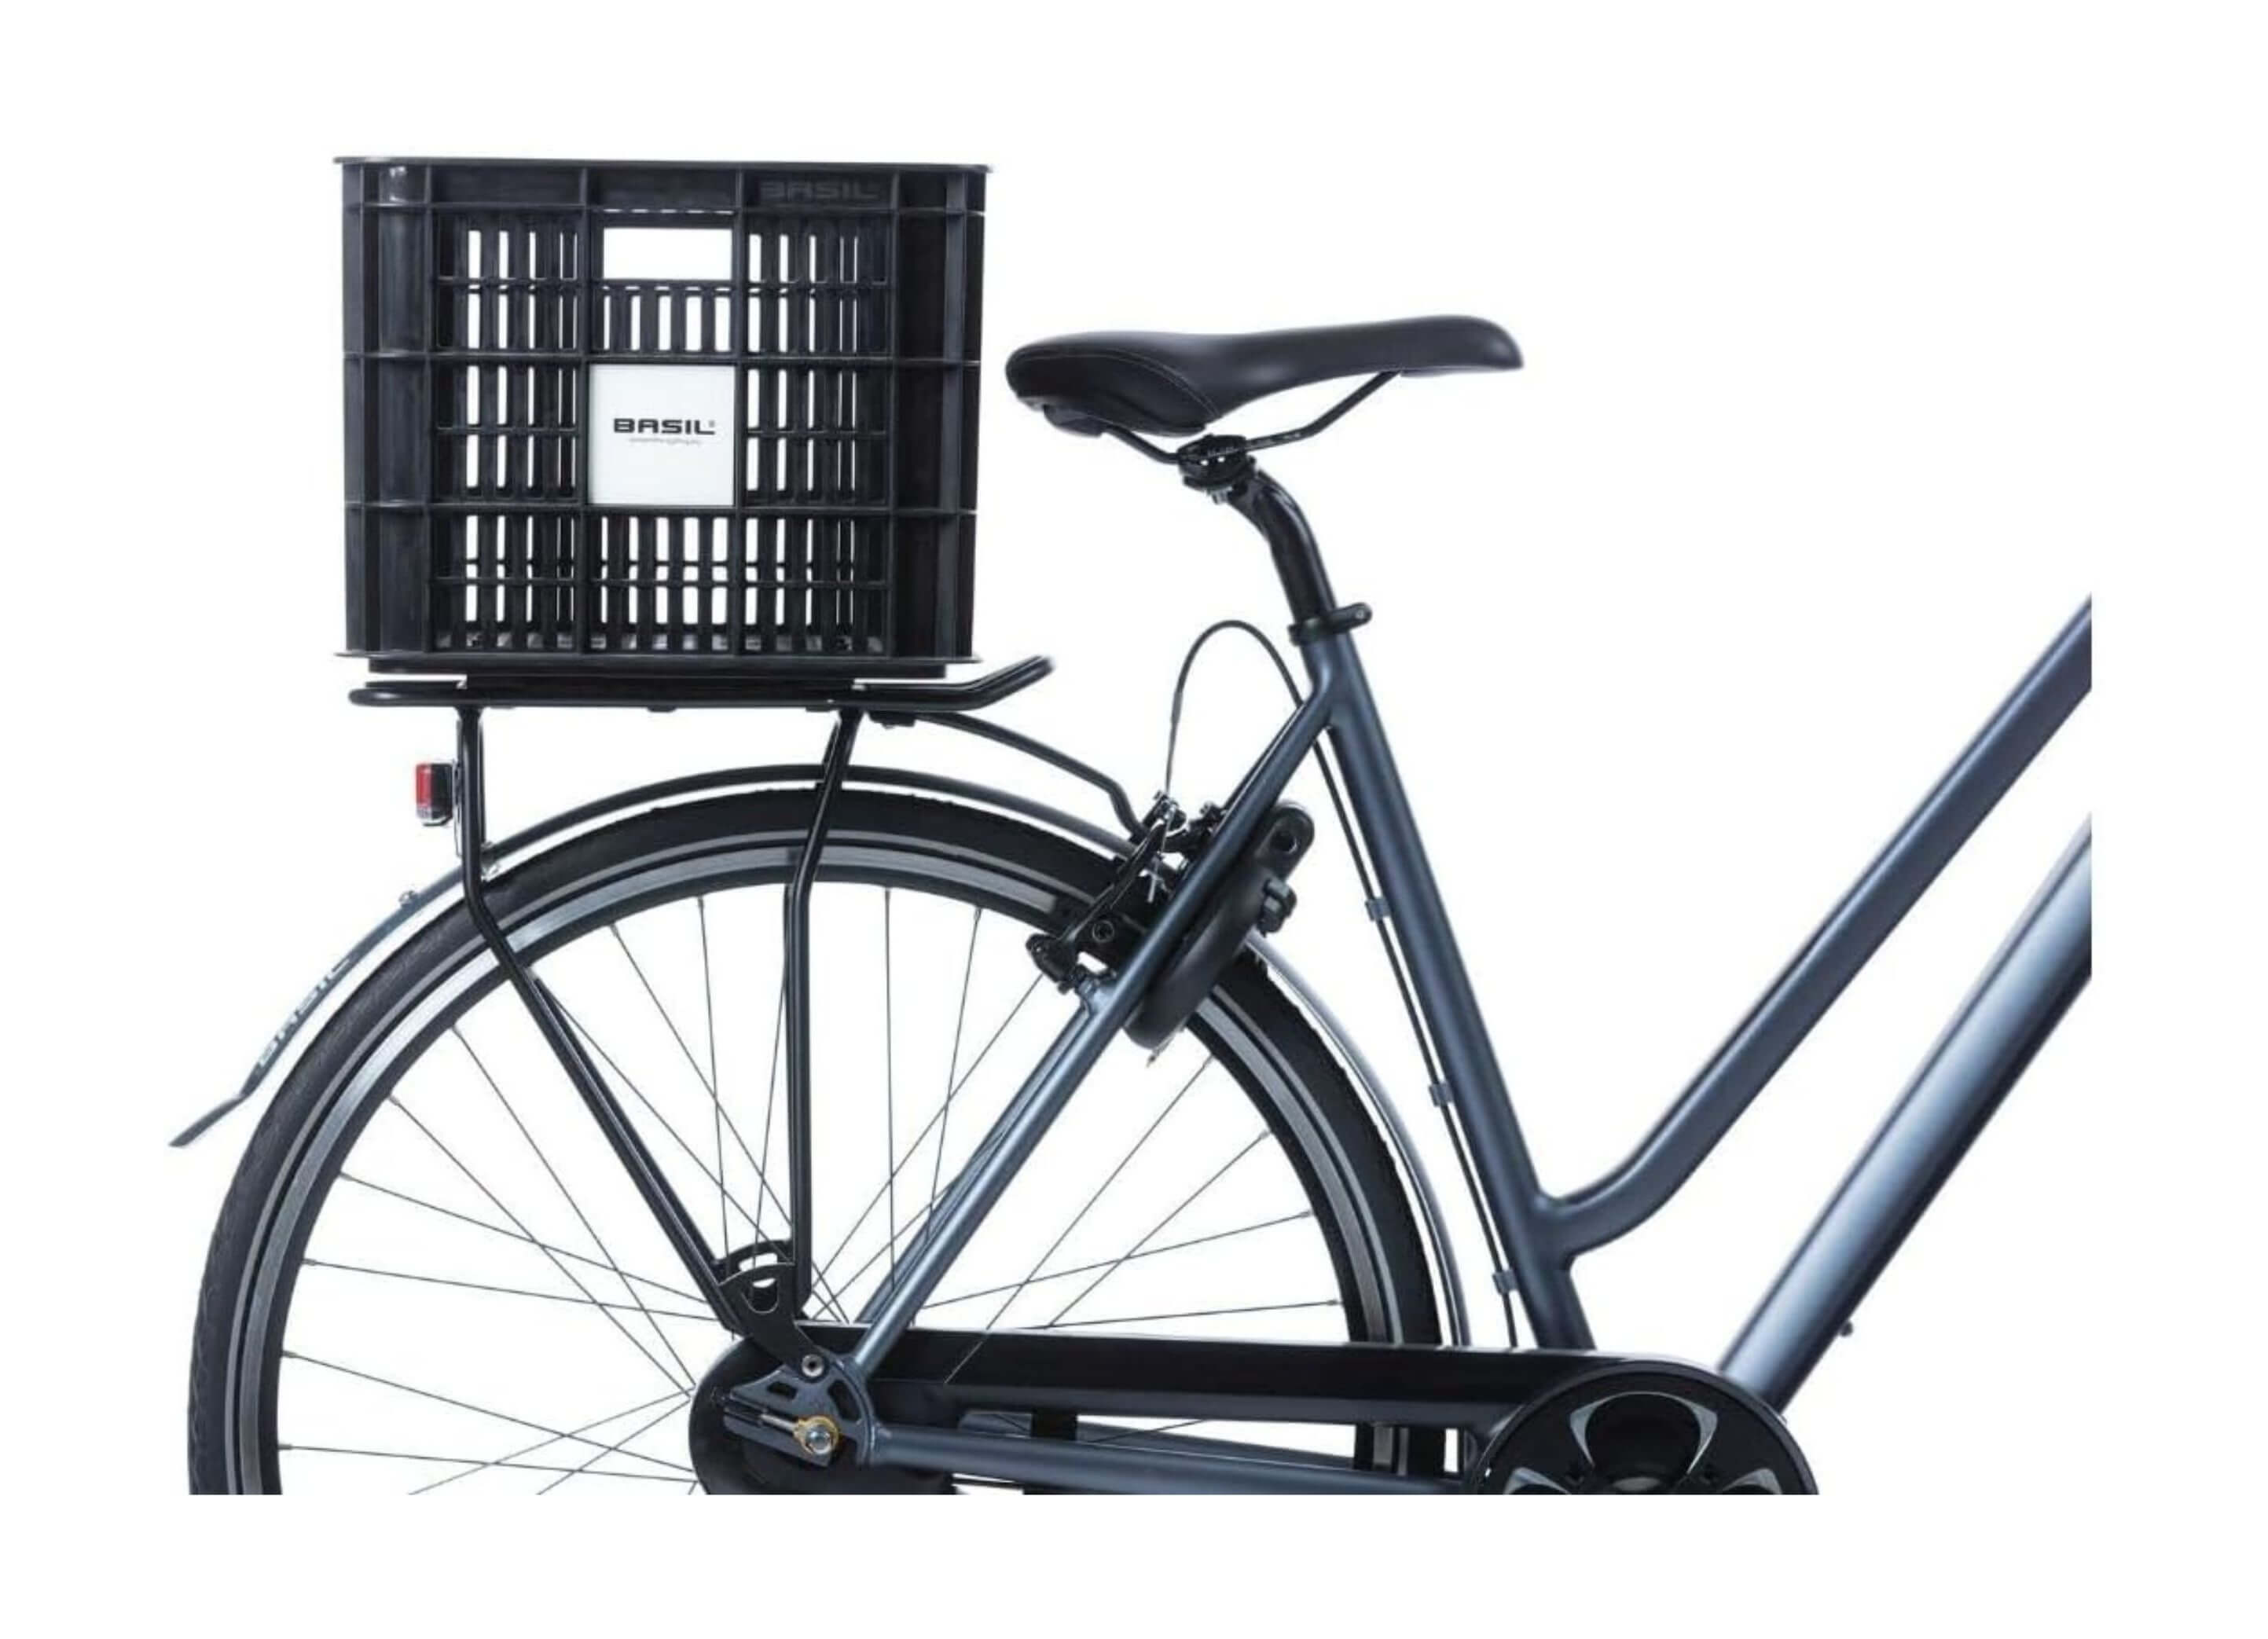 Basil Bicycle Crate